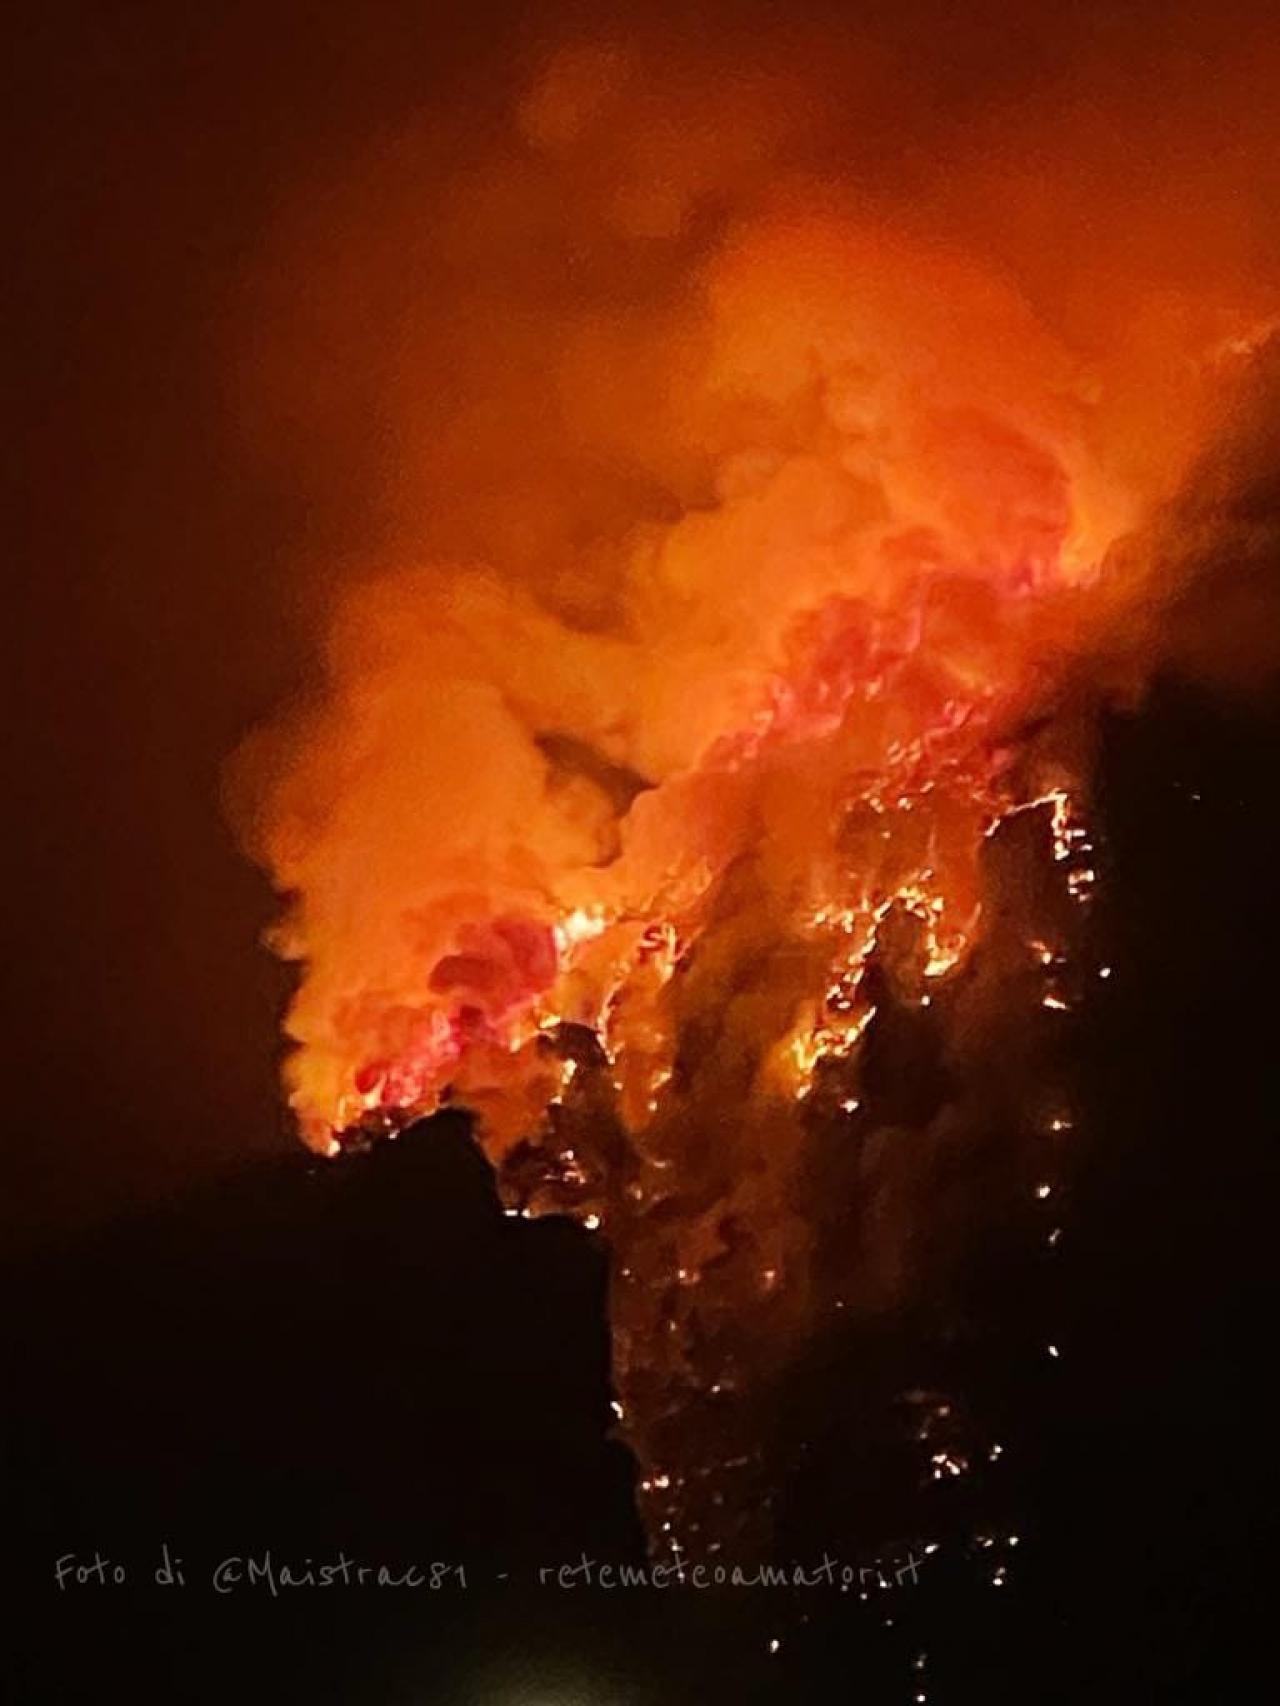  Il disastroso incendio boschivo sopra Longarone. Foto di @Maistrac81 via Rete Meteo Amatori